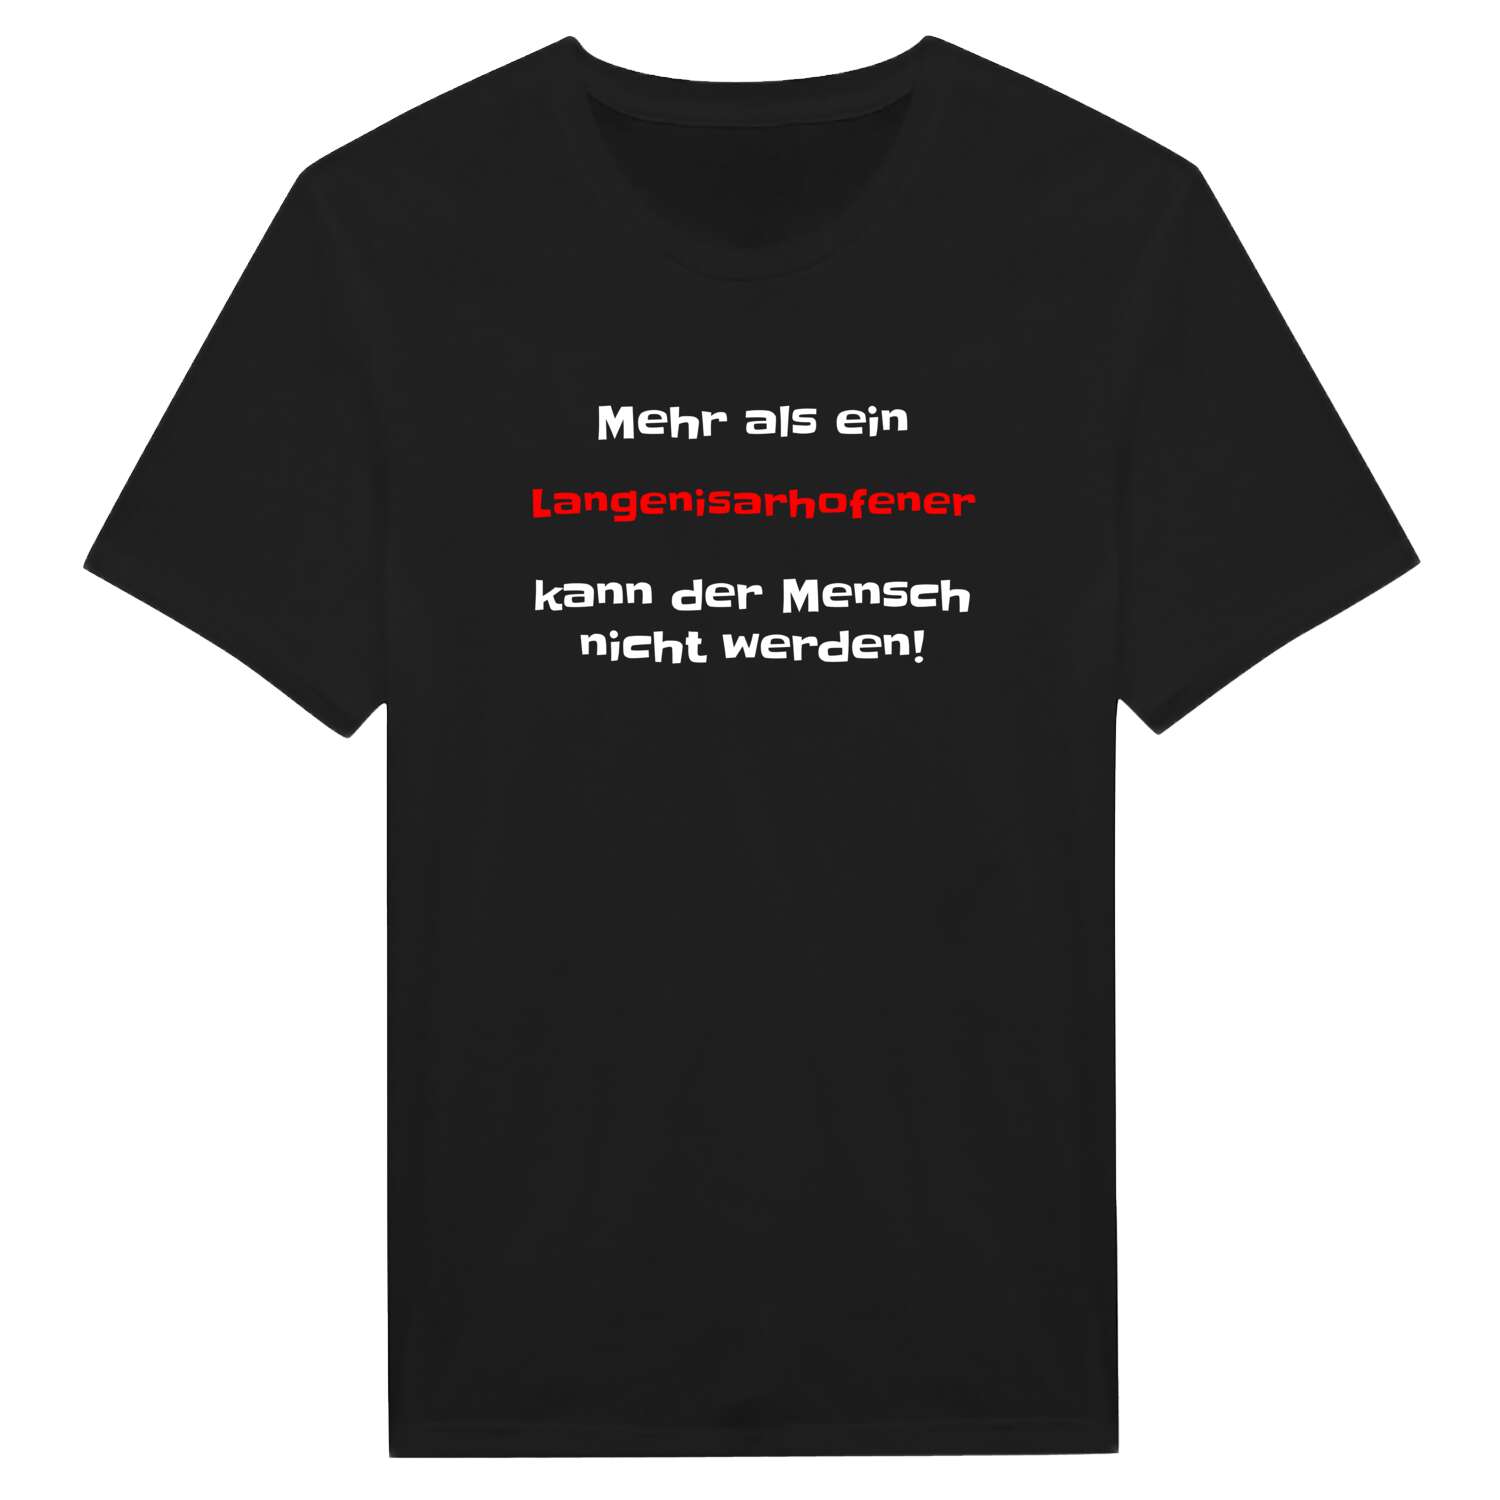 Langenisarhofen T-Shirt »Mehr als ein«